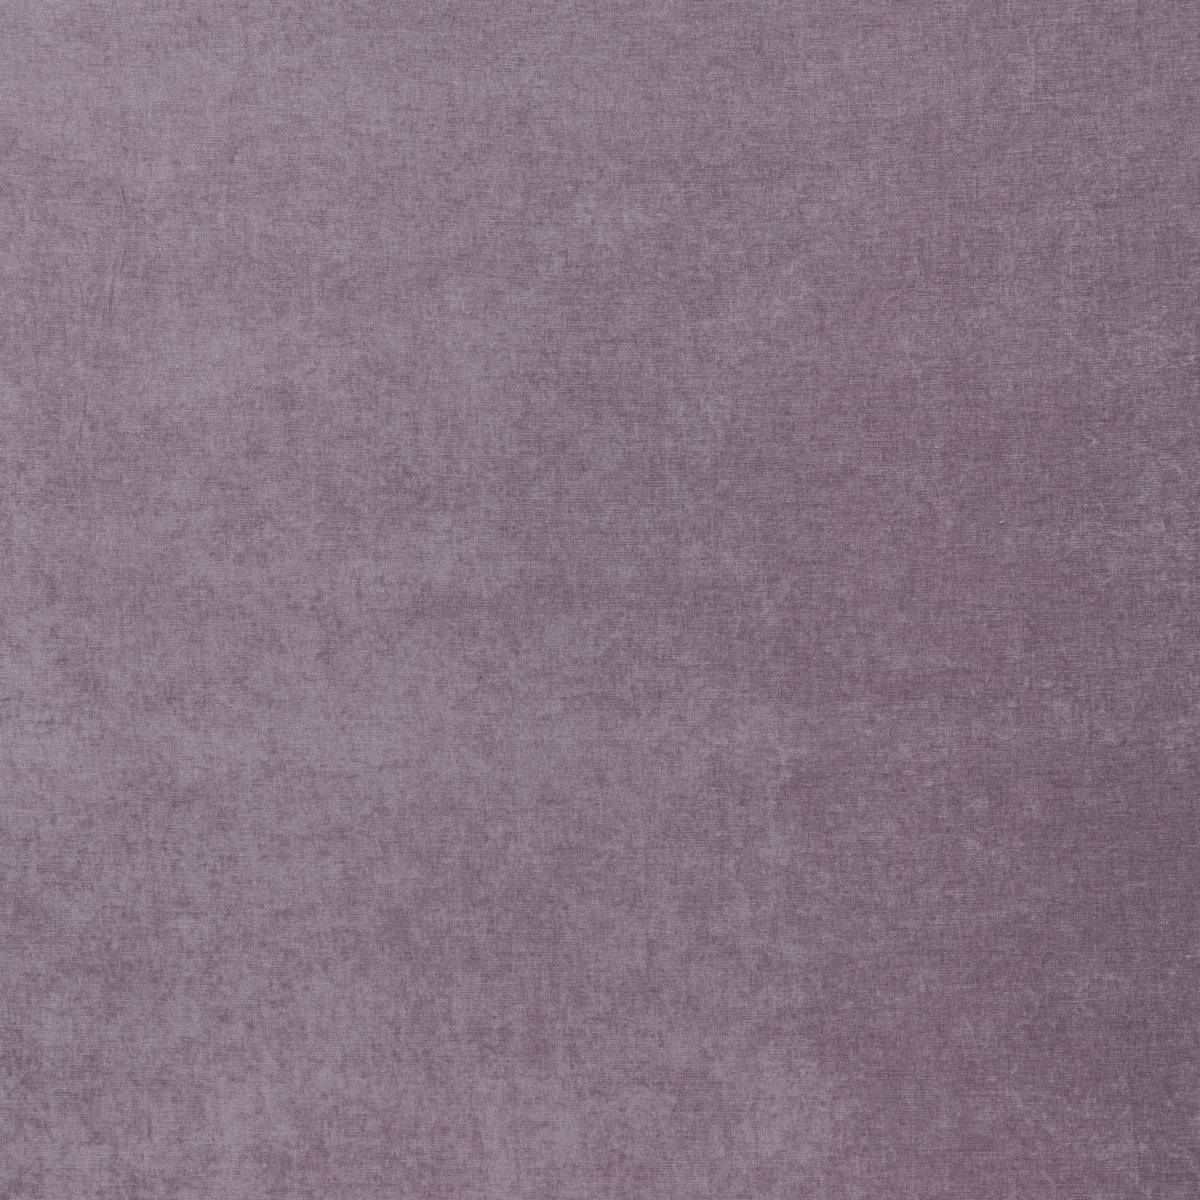 Belgravia Grape Fabric by iLiv